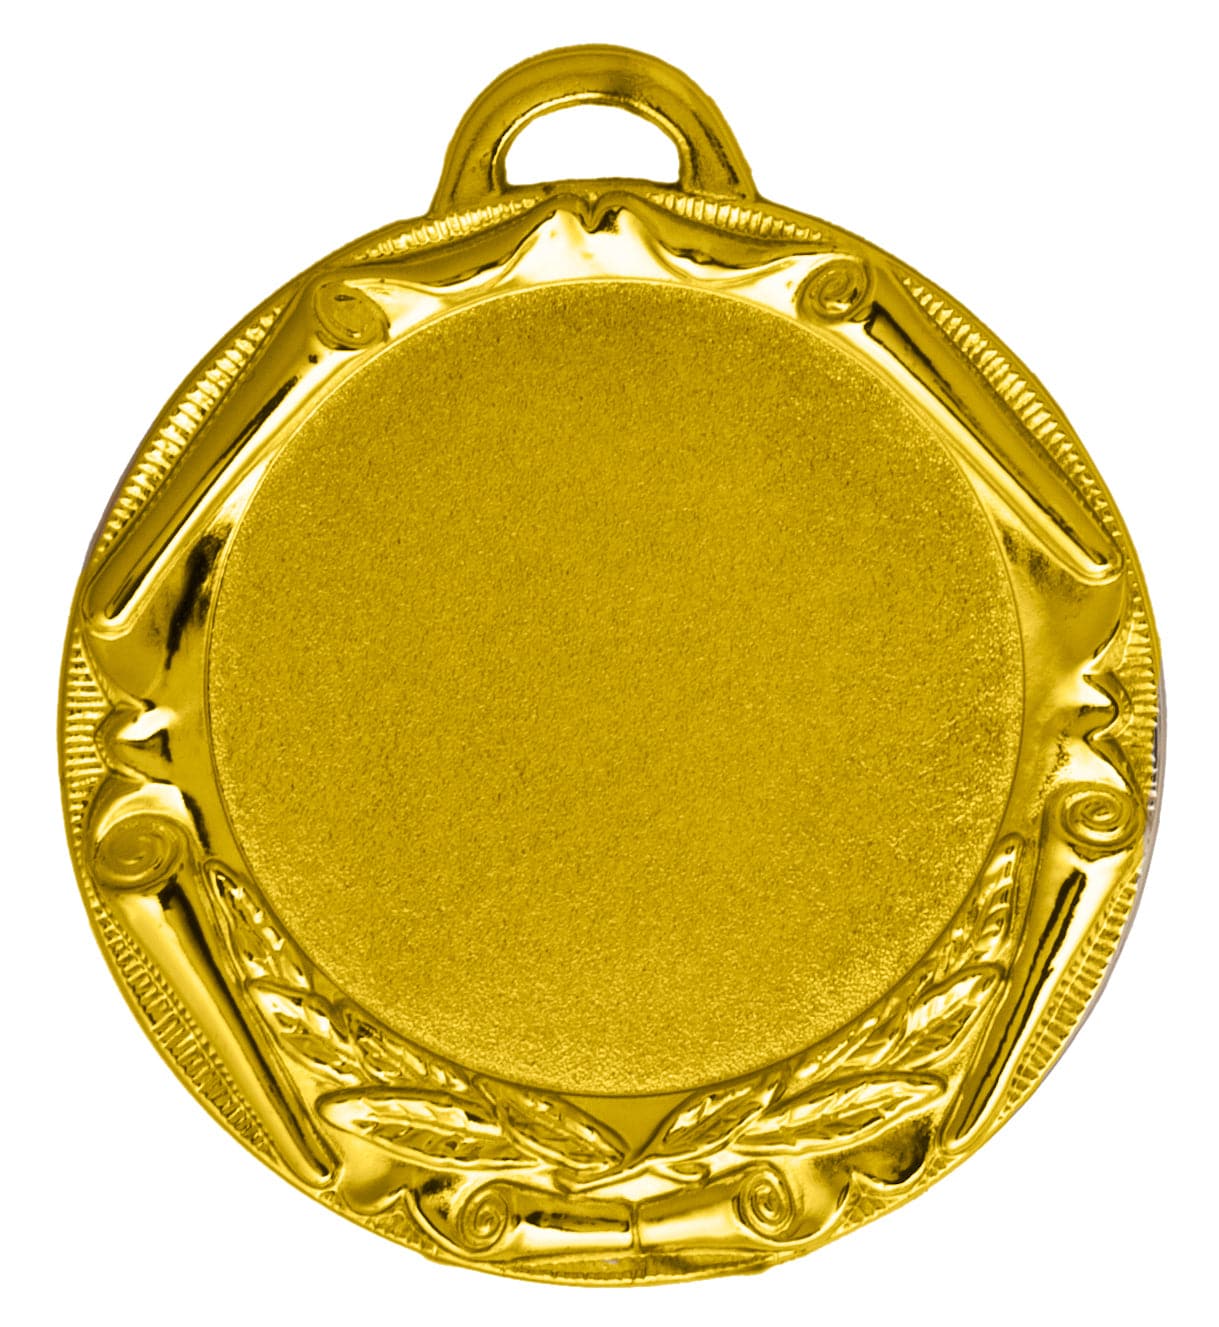 Medaillen Norderstedt 70 mm PK78802g-E50